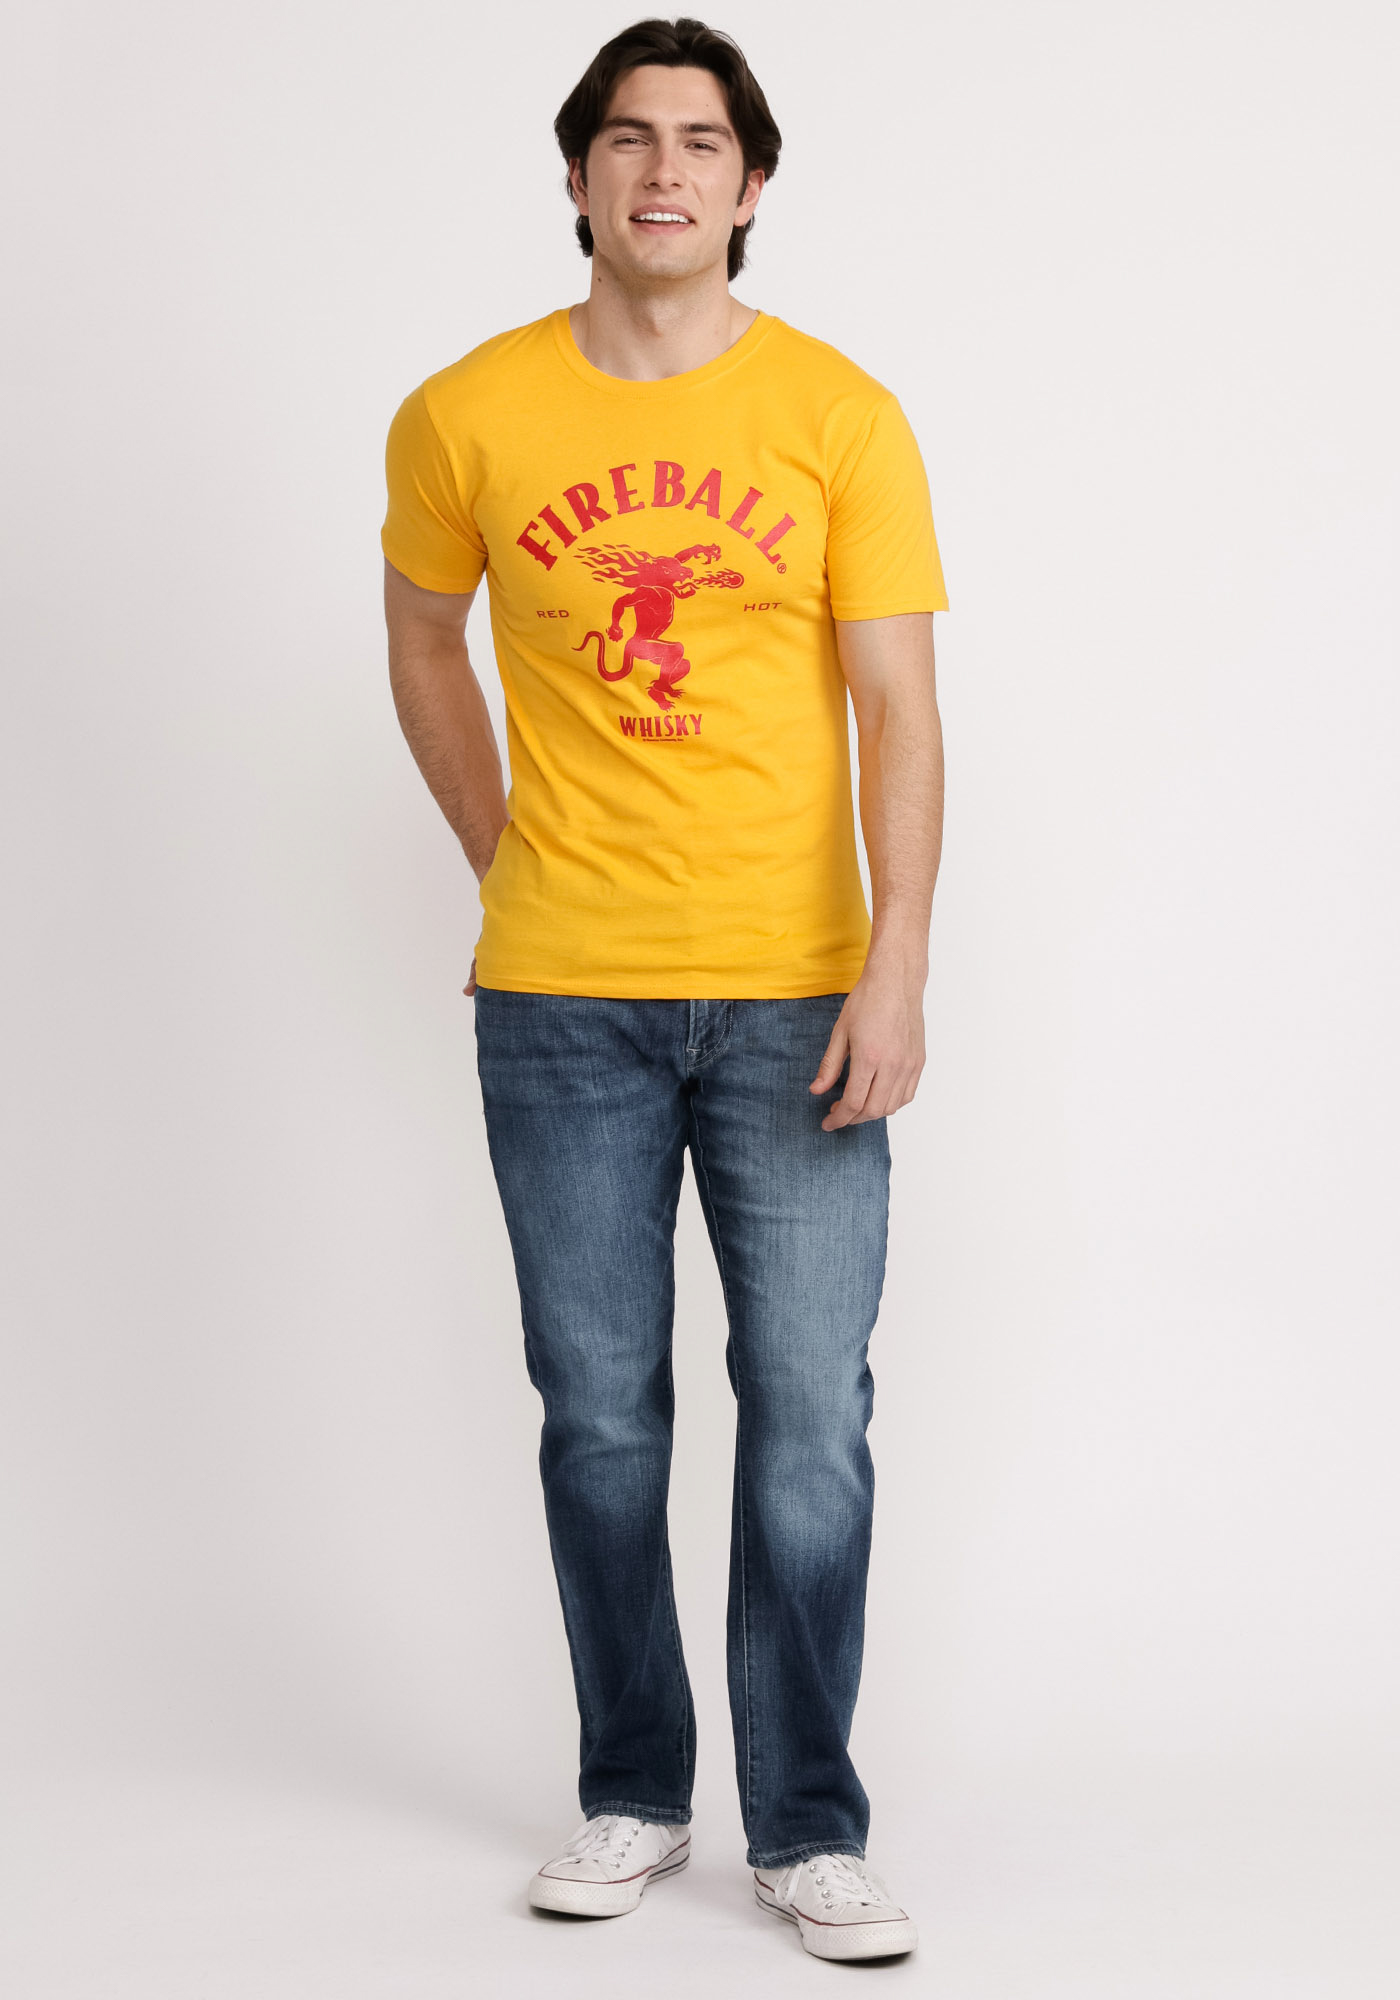 Fireball Men's Super Soft T-shirt - Embrace Softness